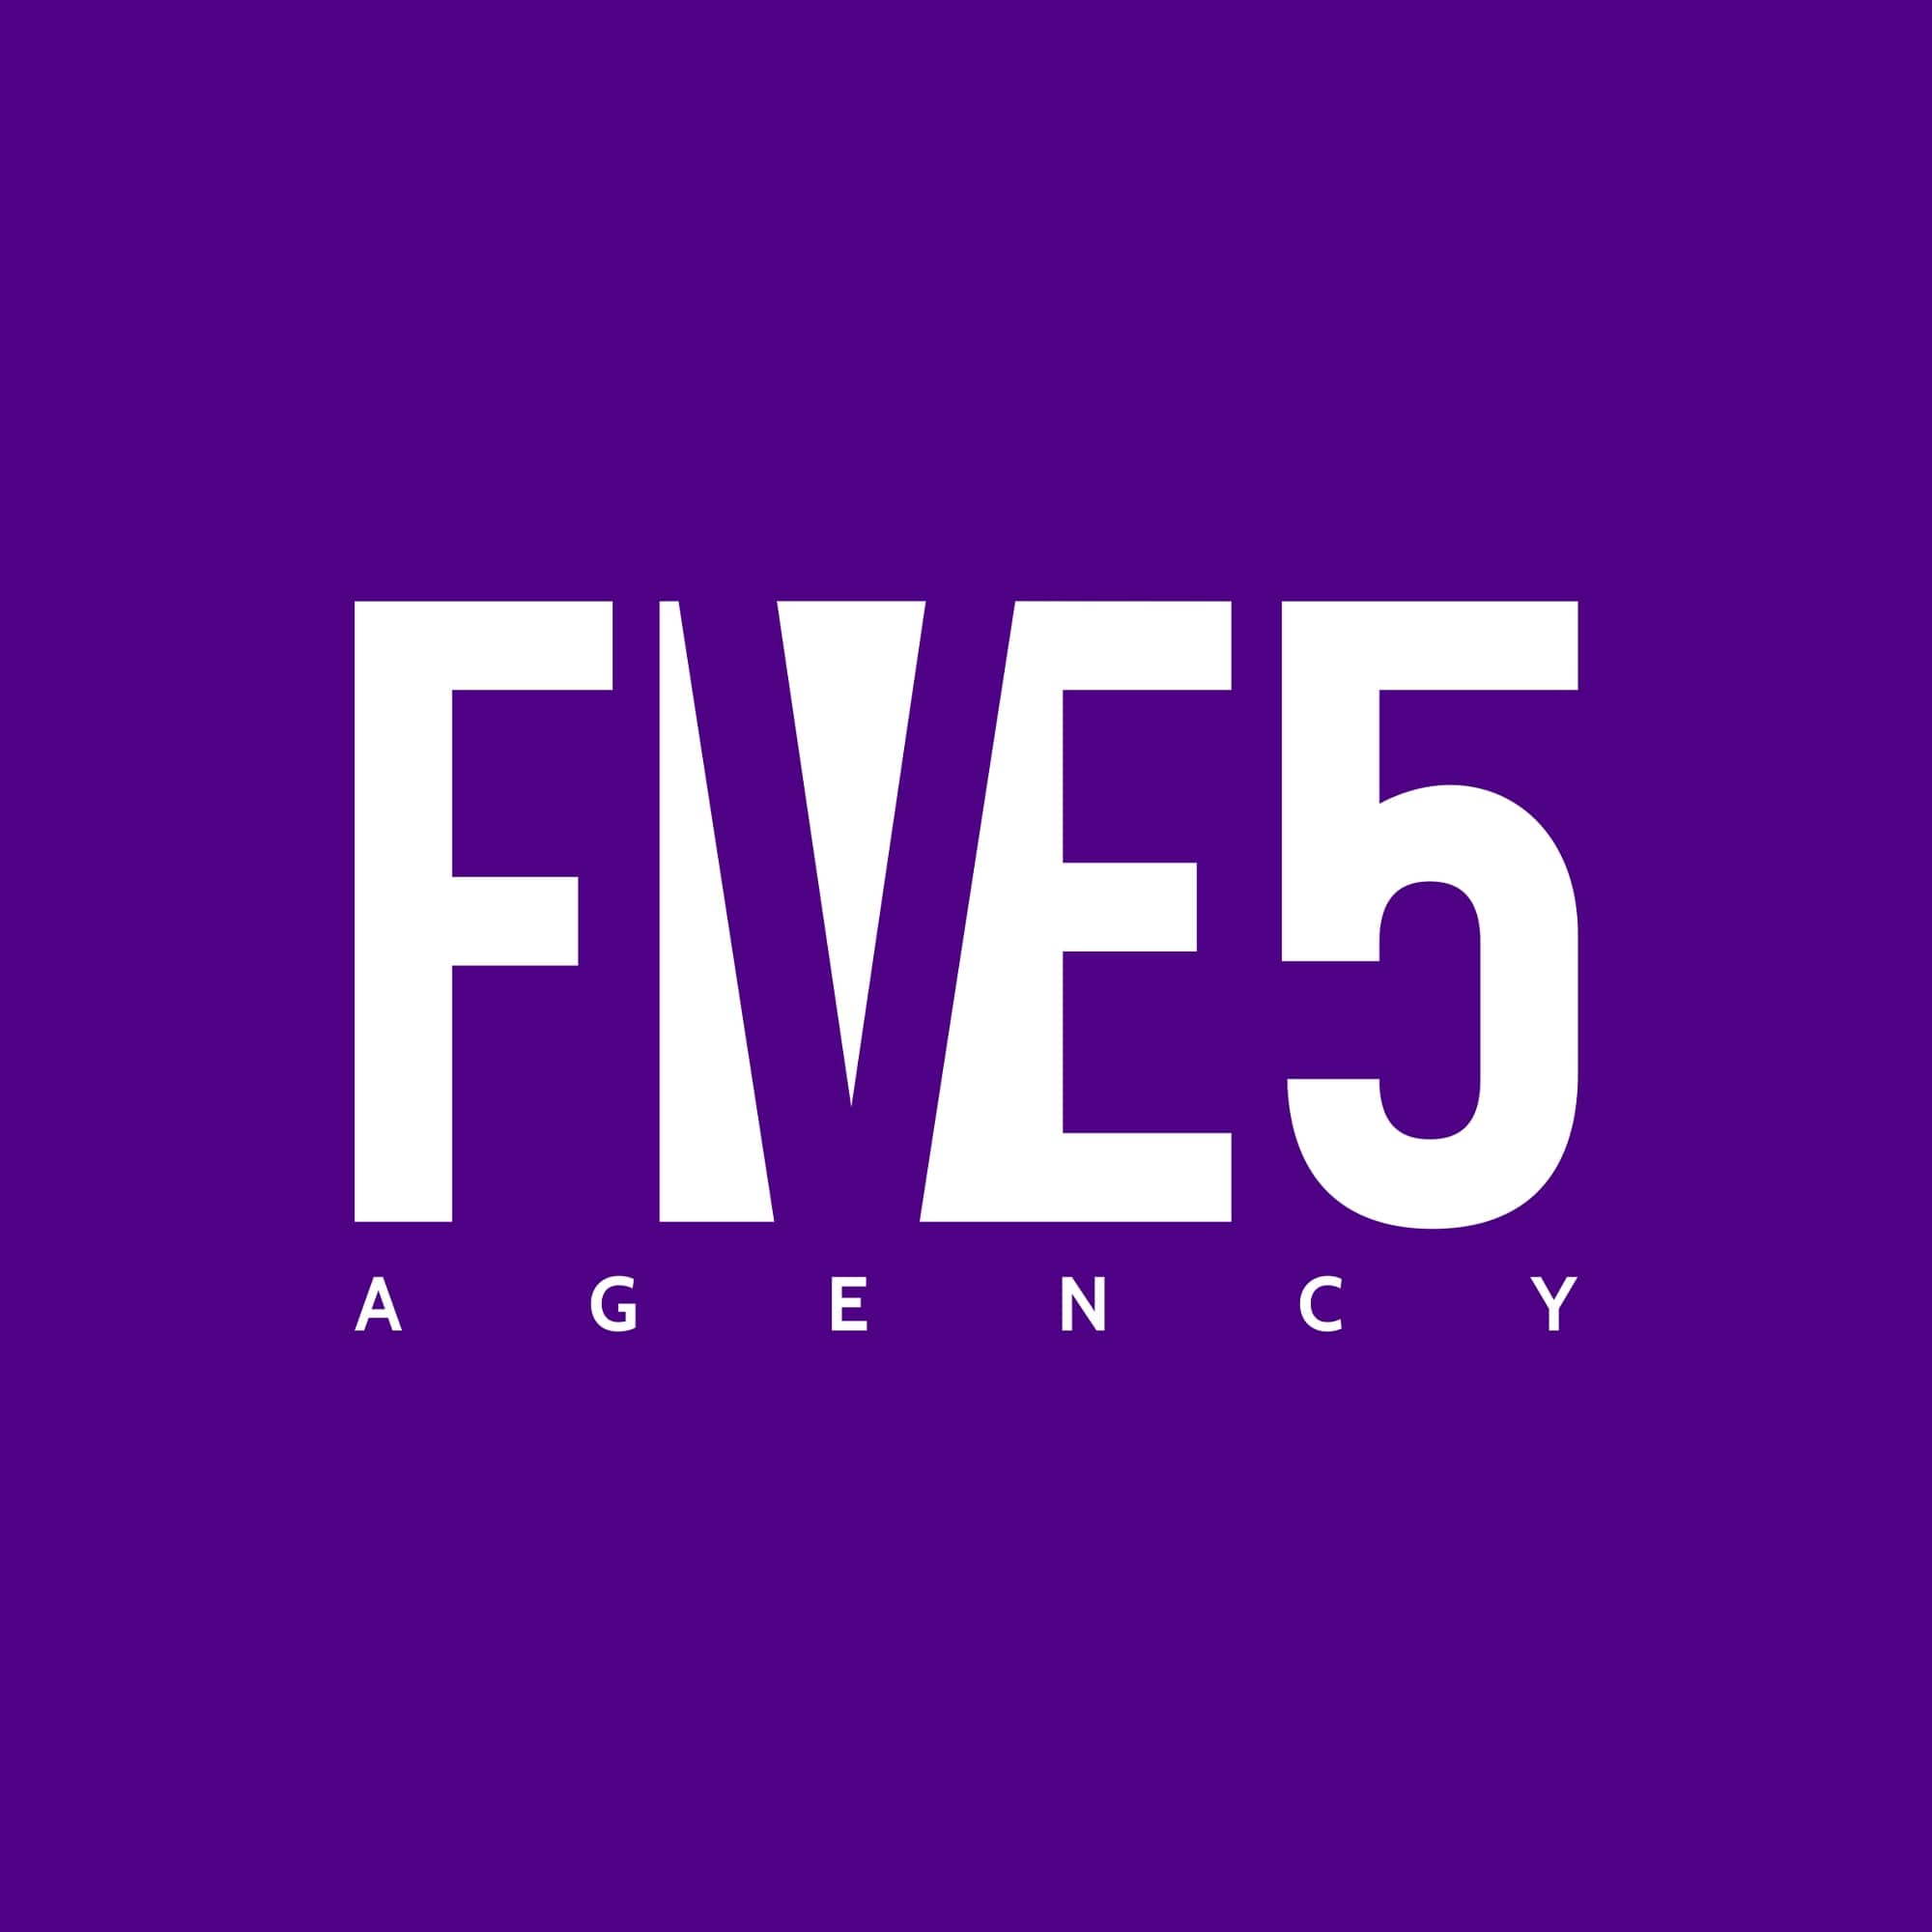 FIVE5 AGENCY